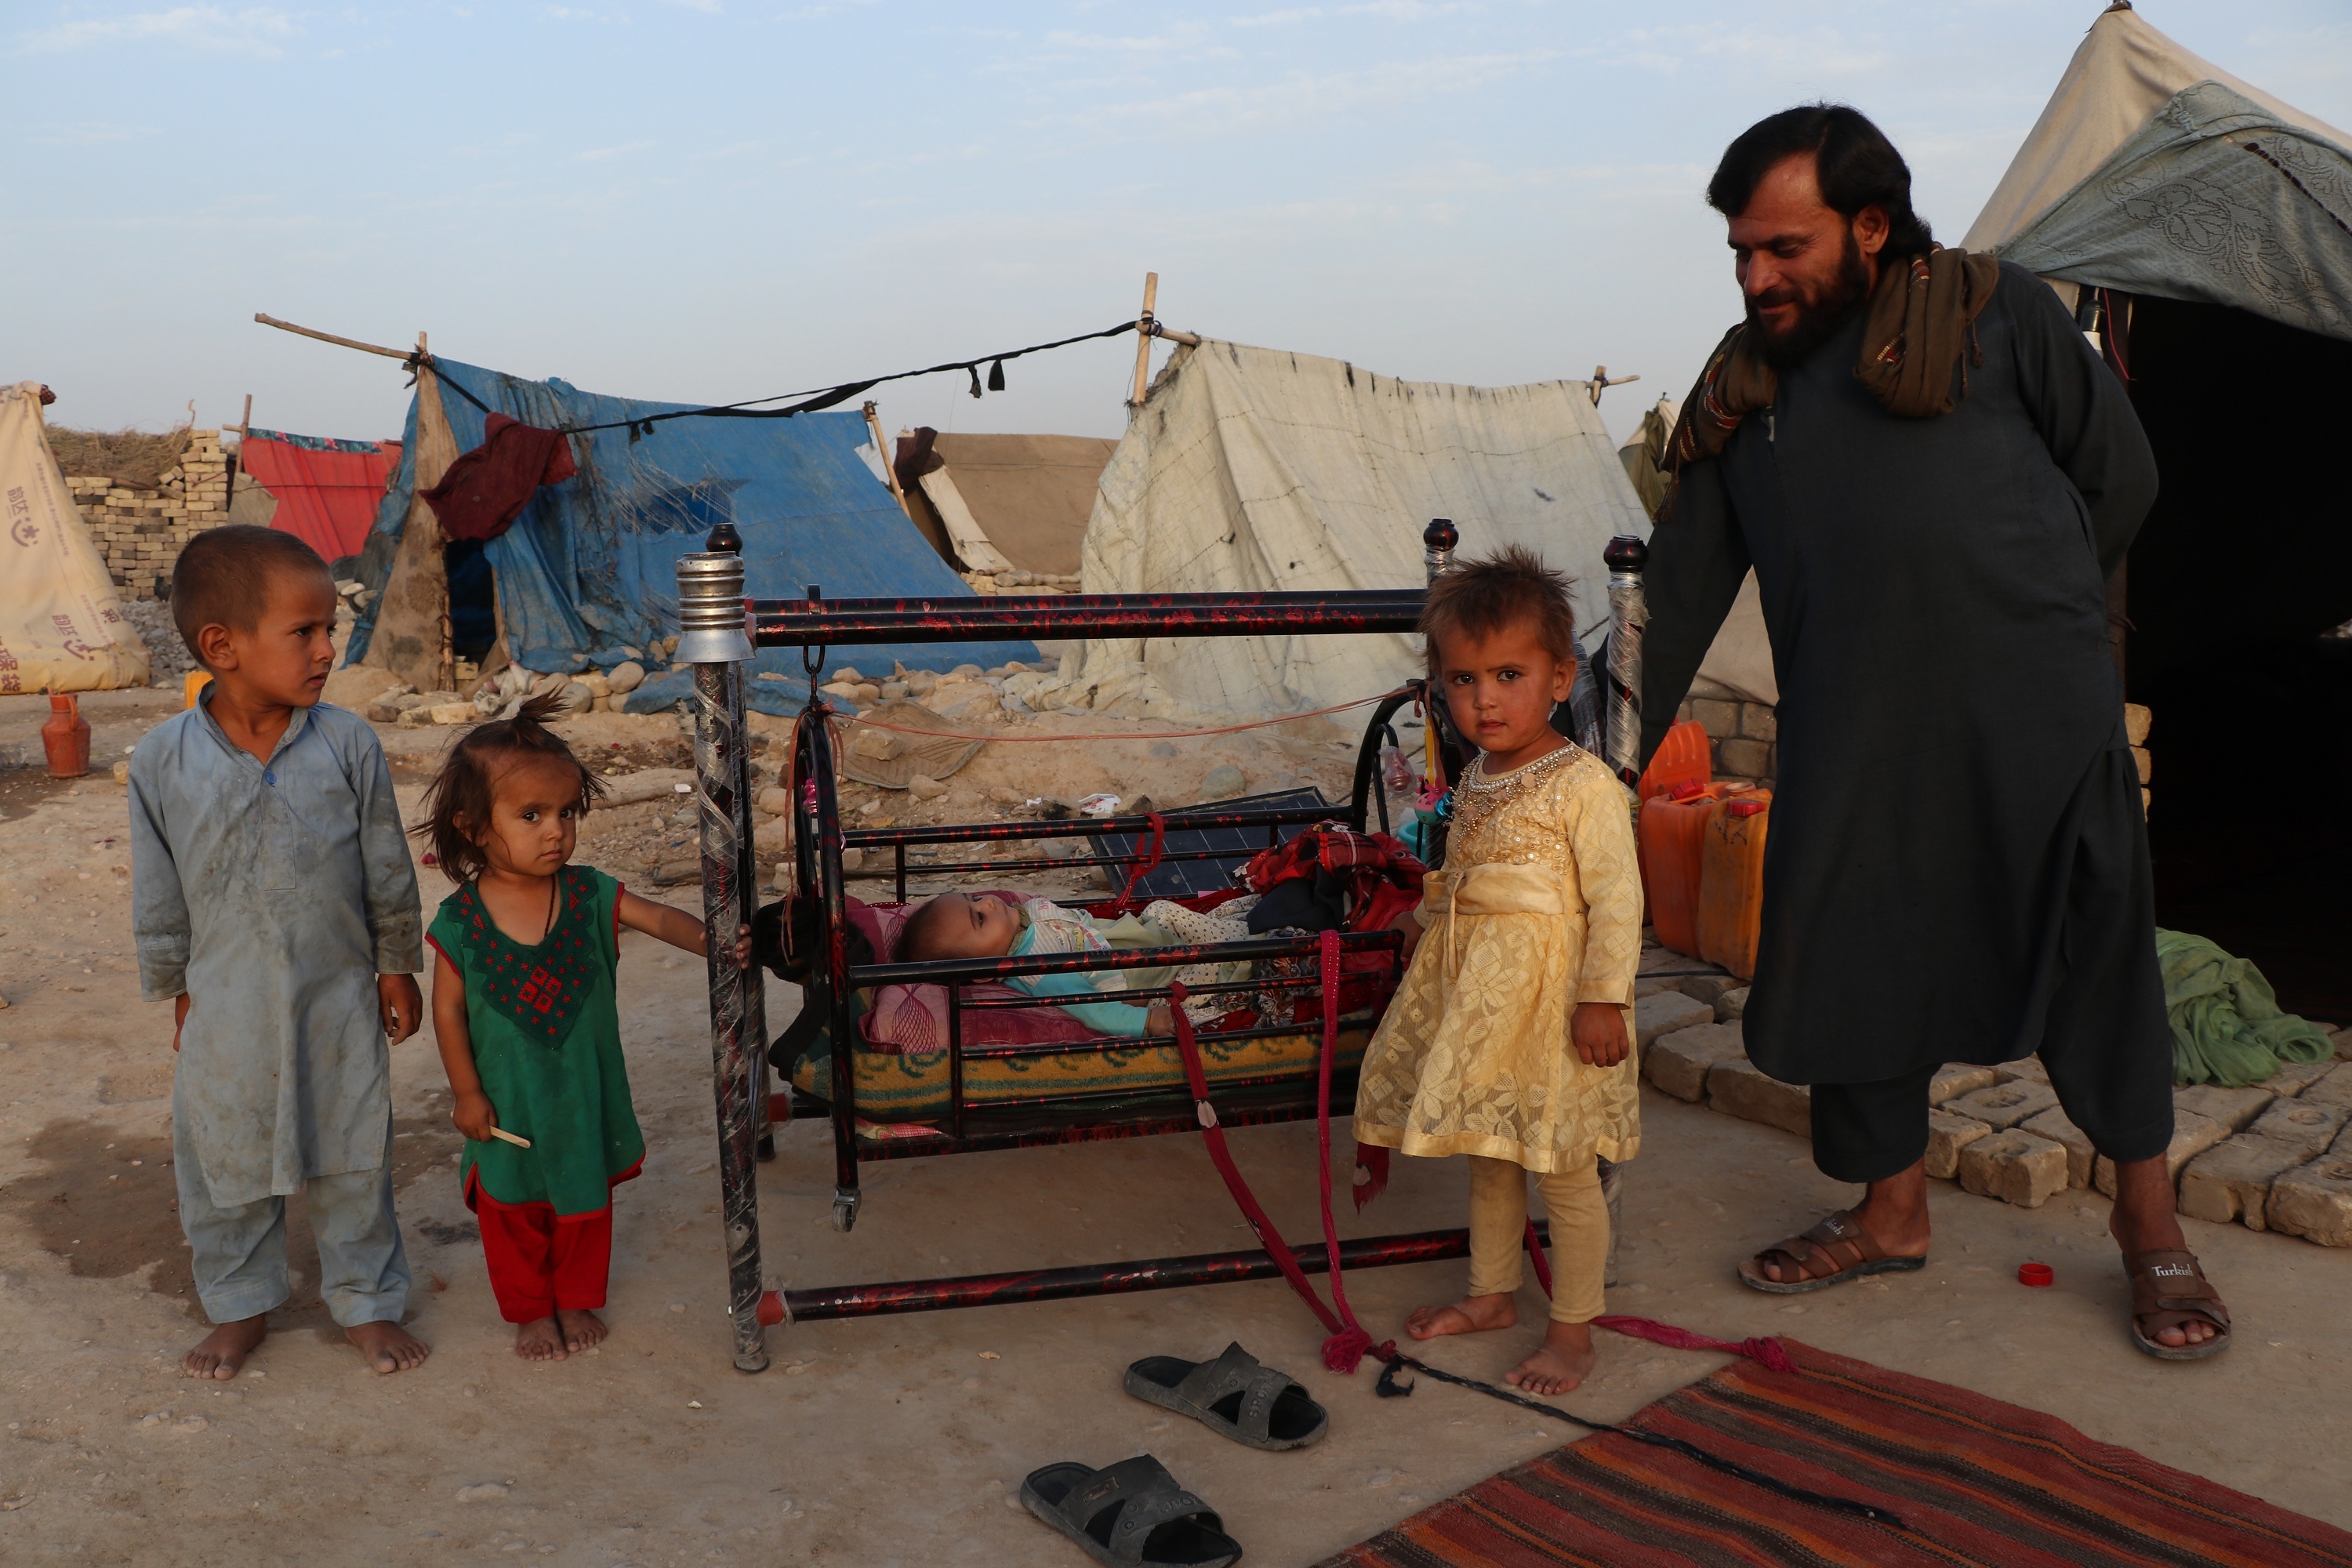 ▲7月31日，阿富汗马扎里沙里夫一处临时营地的难民们。由于连年战乱，阿富汗很多家庭流离失所，只能栖身于条件简陋的临时营地中。图/新华社